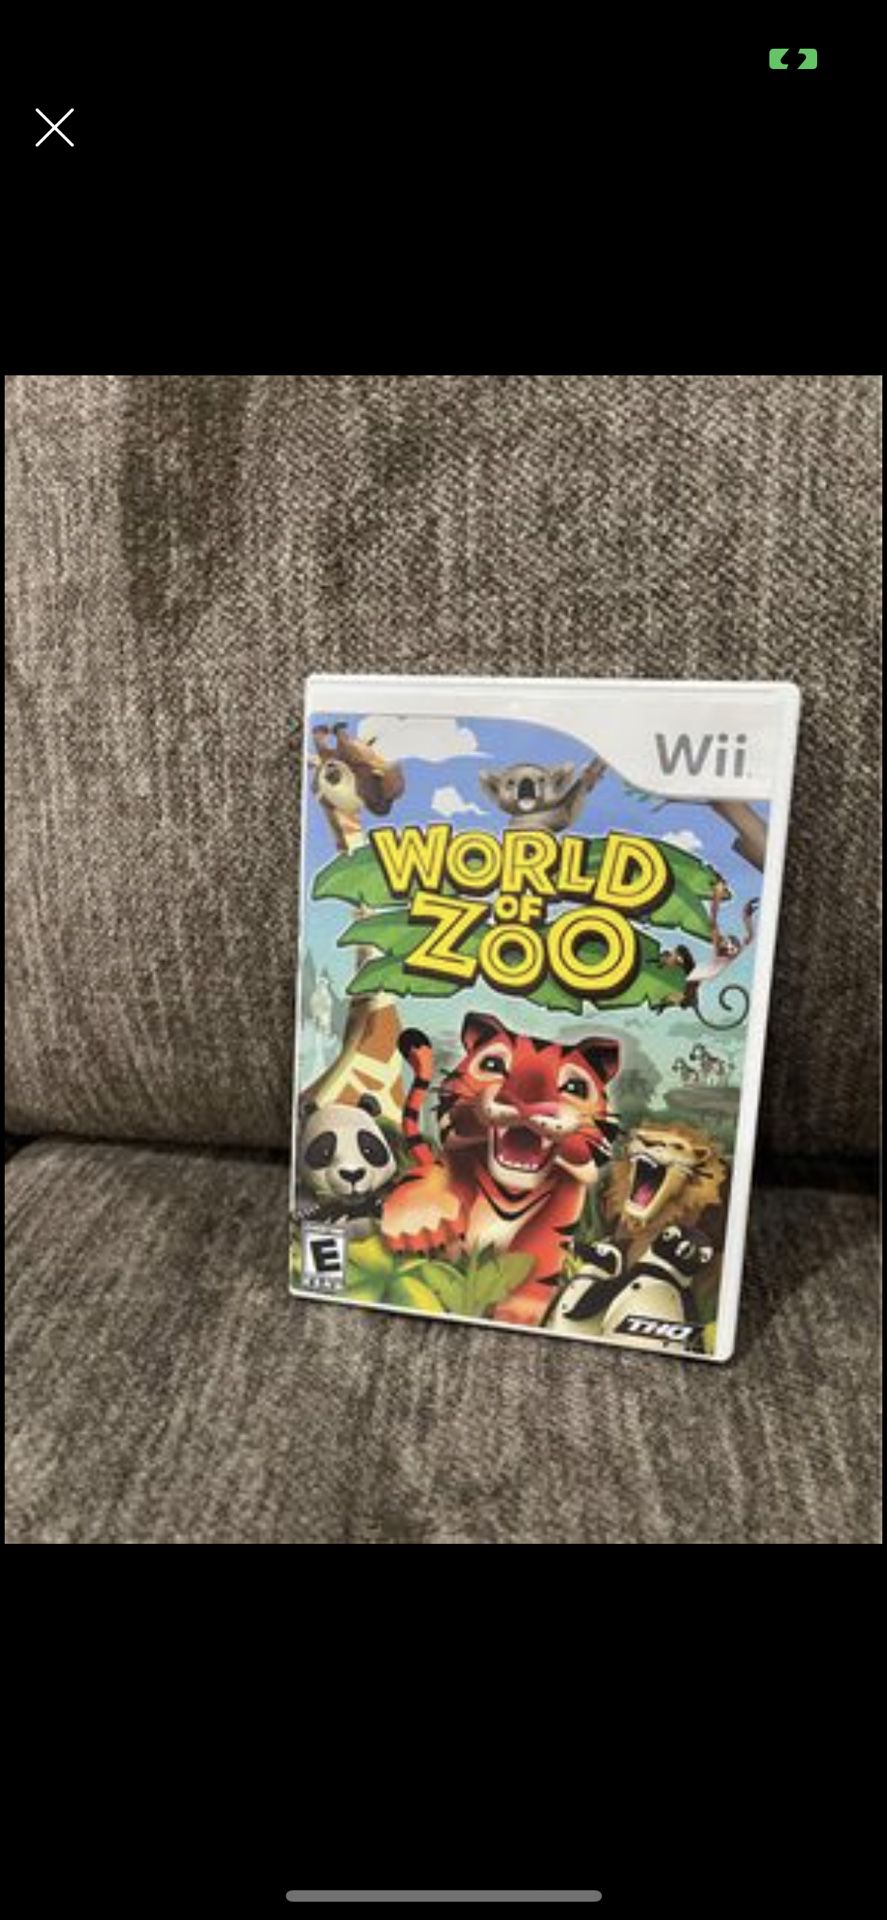 World of Zoo (Nintendo Wii, 2009